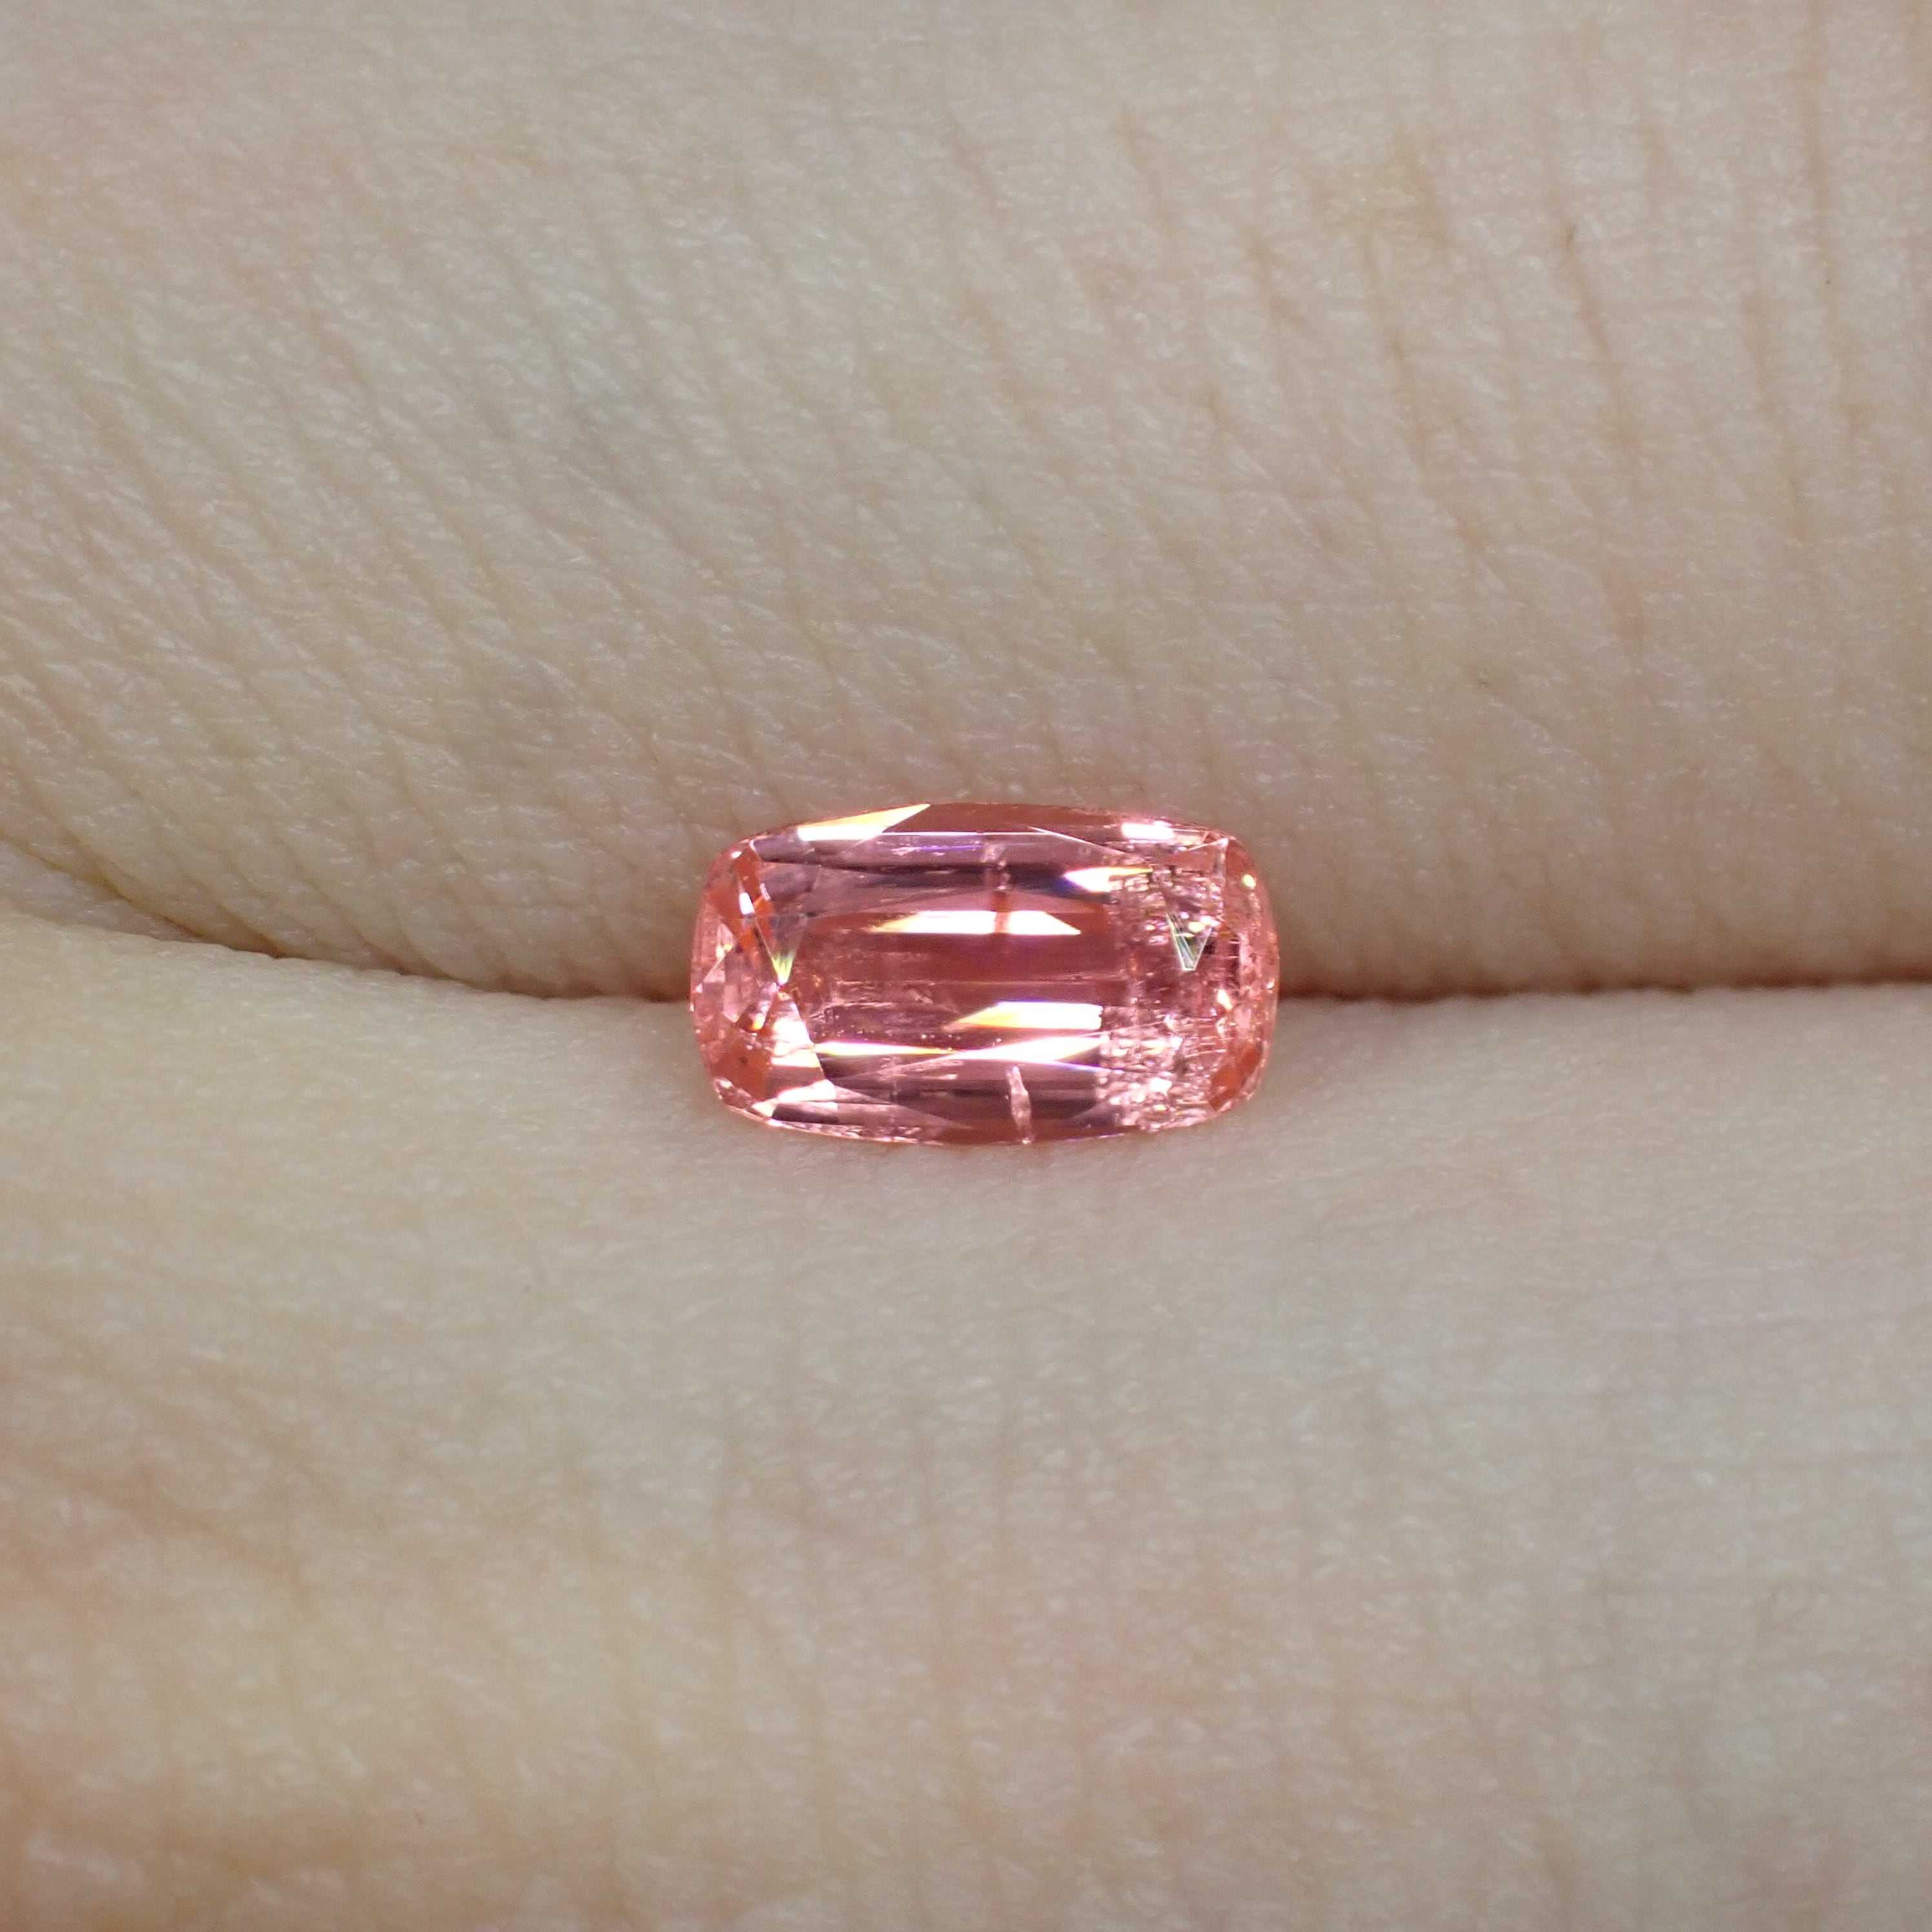 ネオン感 蛍光ペンのような色のヴェイリネナイト 0.469ct | 宝石ルース販売、ジュエリー加工「宝石つむり」